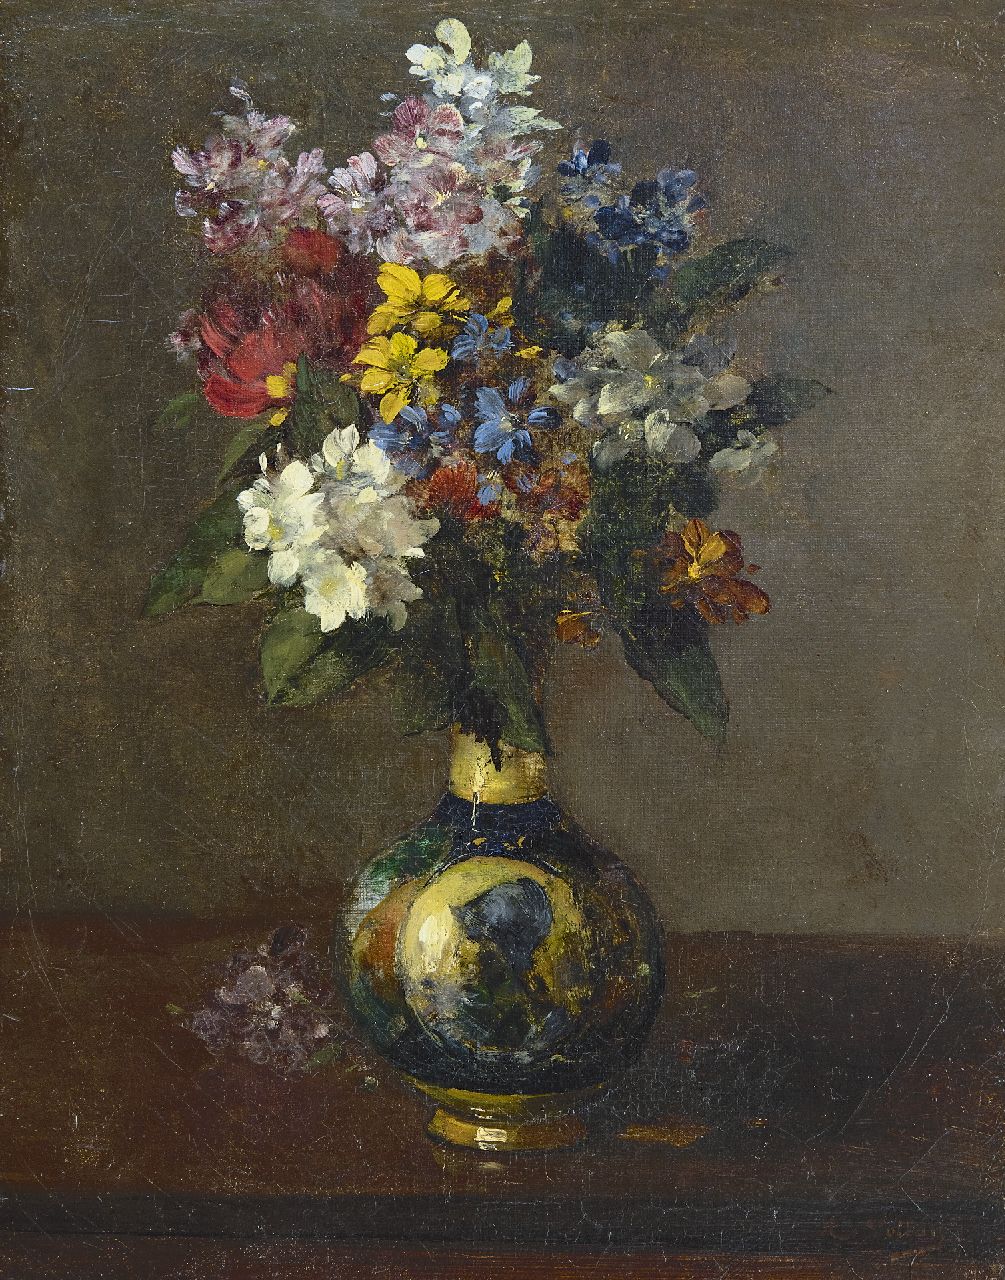 Vollon A.  | Antoine Vollon | Schilderijen te koop aangeboden | Bloemen in een vaas, olieverf op doek 41,4 x 32,0 cm, gesigneerd rechtsonder